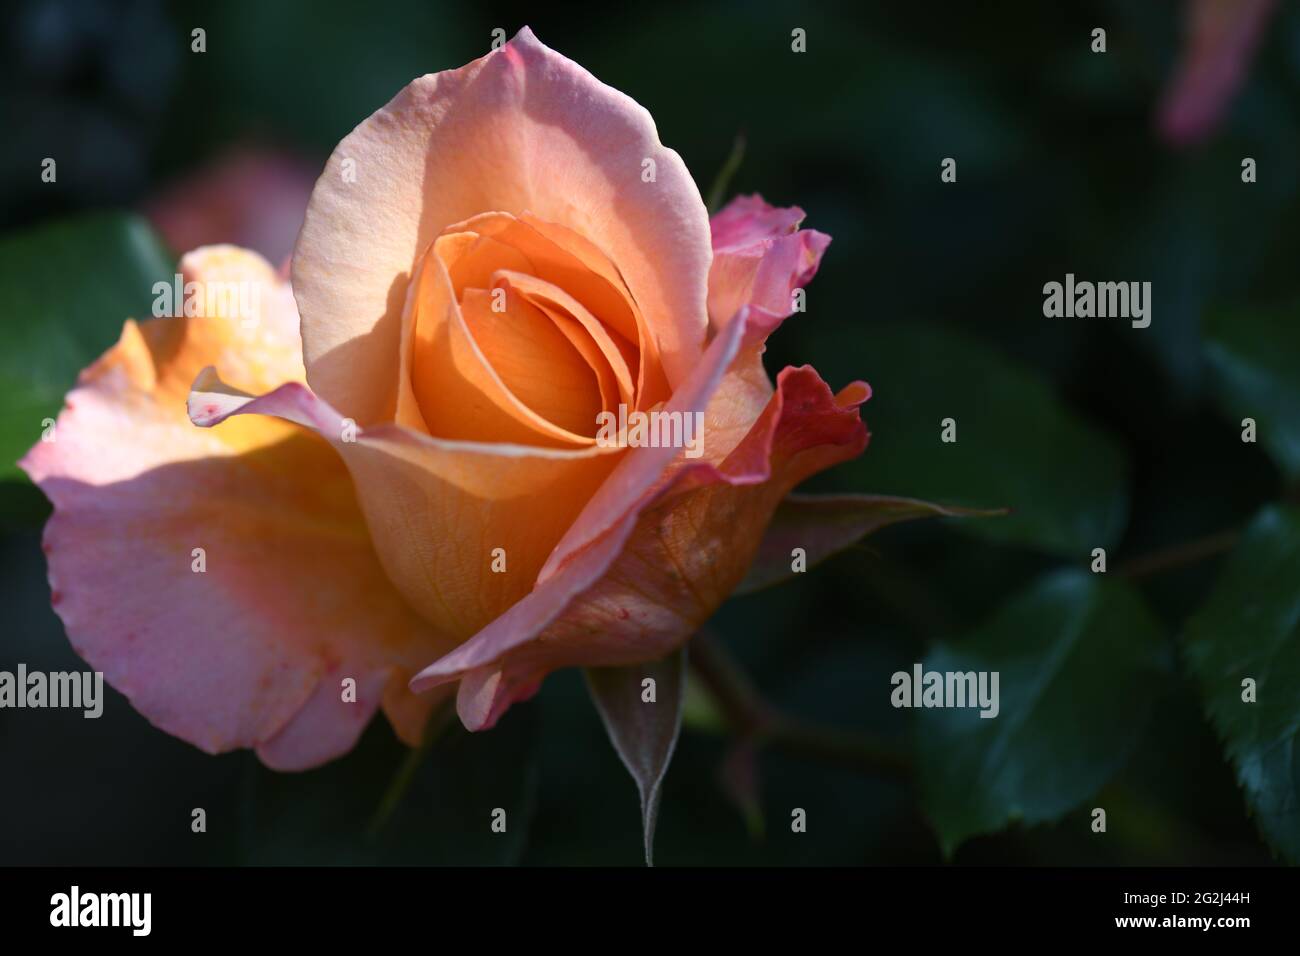 Heilpflanze Rose - rosa - mit herrlicher zart orangRosenblüte als Zeichen der Liebe und Freudschaft und war Grundstock der europäischen Gartenkultur, Banque D'Images